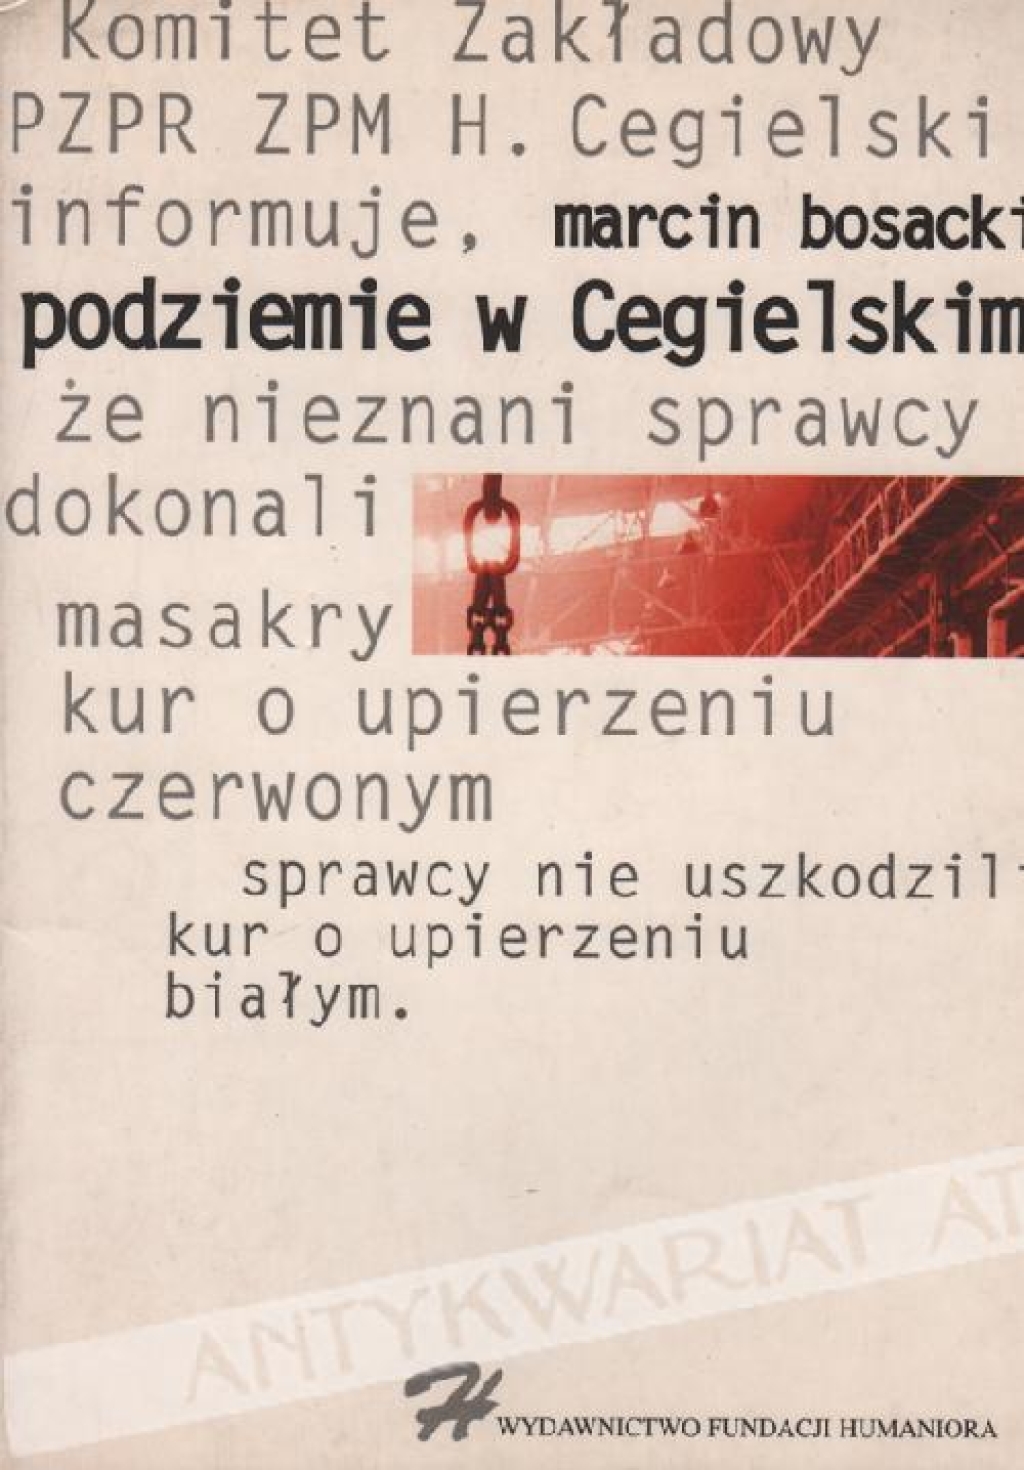 Podziemie w Cegielskim (NSZZ "Solidarność ZPM H. Cegielski Poznań od 13 grudnia 1981 do 17 kwietnia 1989)